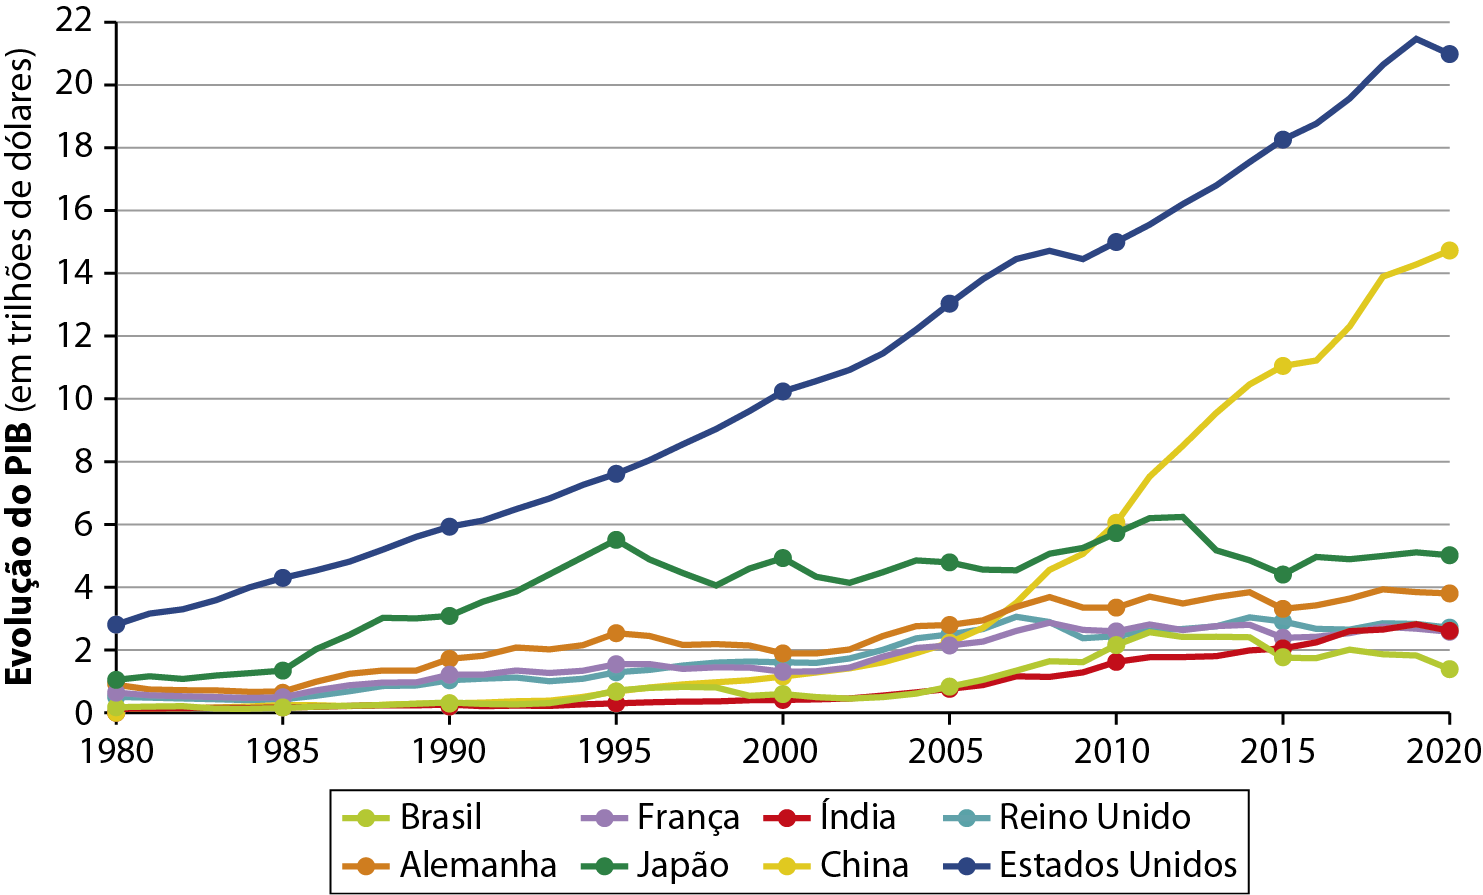 Gráfico. Principais potências econômicas mundiais: evolução do Produto Interno Bruto (de 1980 a 2020). 
Gráfico de linhas com eixos horizontal e vertical. O eixo vertical indica a evolução do Produto Interno Bruto em trilhões de dólares; o eixo horizontal indica o período, que varia de 1980 até 2020. Os países são representados por linhas de cores diferentes.
Evolução do PIB (valores em trilhões de dólares). 
Brasil. 1980: 0,1. 1985: 0,1. 1990: 0,4. 1995: 0,8. 2000: 0,7. 2005: 0,9. 2010: 2,1. 2015: 1,9. 2020: 1,8. 
França. 1980: 0,8. 1985: 0,7. 1990: 1,6. 1995: 1,8. 2000: 1,7. 2005: 2,1. 2010: 2,5. 2015: 2,2. 2020: 2,5. 
Índia. 1980: 0,1. 1985: 0,1. 1990: 0,2. 1995: 0,2. 2000: 0,4. 2005: 0,8. 2010: 2,8. 2015: 2,2. 2020: 2,5. 
Reino Unido. 1980: 0,8. 1985: 0,8. 1990: 1,5. 1995: 1,7. 2000: 1,8. 2005: 2,3. 2010: 2,5. 2015: 3. 2020: 2,6. 
Alemanha. 1980: 1. 1985: 1. 1990: 1,9. 1995: 2,5. 2000: 2. 2005: 3,1. 2010: 3,7. 2015: 3,6. 2020: 3,9. 
Japão. 1980: 1,6. 1985: 1,7. 1990: 3,2. 1995: 5,8. 2000: 5. 2005: 5. 2010: 5,9. 2015: 4,5. 2020: 5,6. 
China. 1980: 0,5. 1985: 0,5. 1990: 0,5. 1995: 0,8. 2000: 1. 2005: 2,1. 2010: 6. 2015: 11. 2020: 14,6.
Estados Unidos. 1980: 2,9. 1985: 4,1. 1990: 5,9. 1995: 6,8. 2000: 10,1. 2005: 13. 2010: 15. 2015: 18,1. 2020: 21.